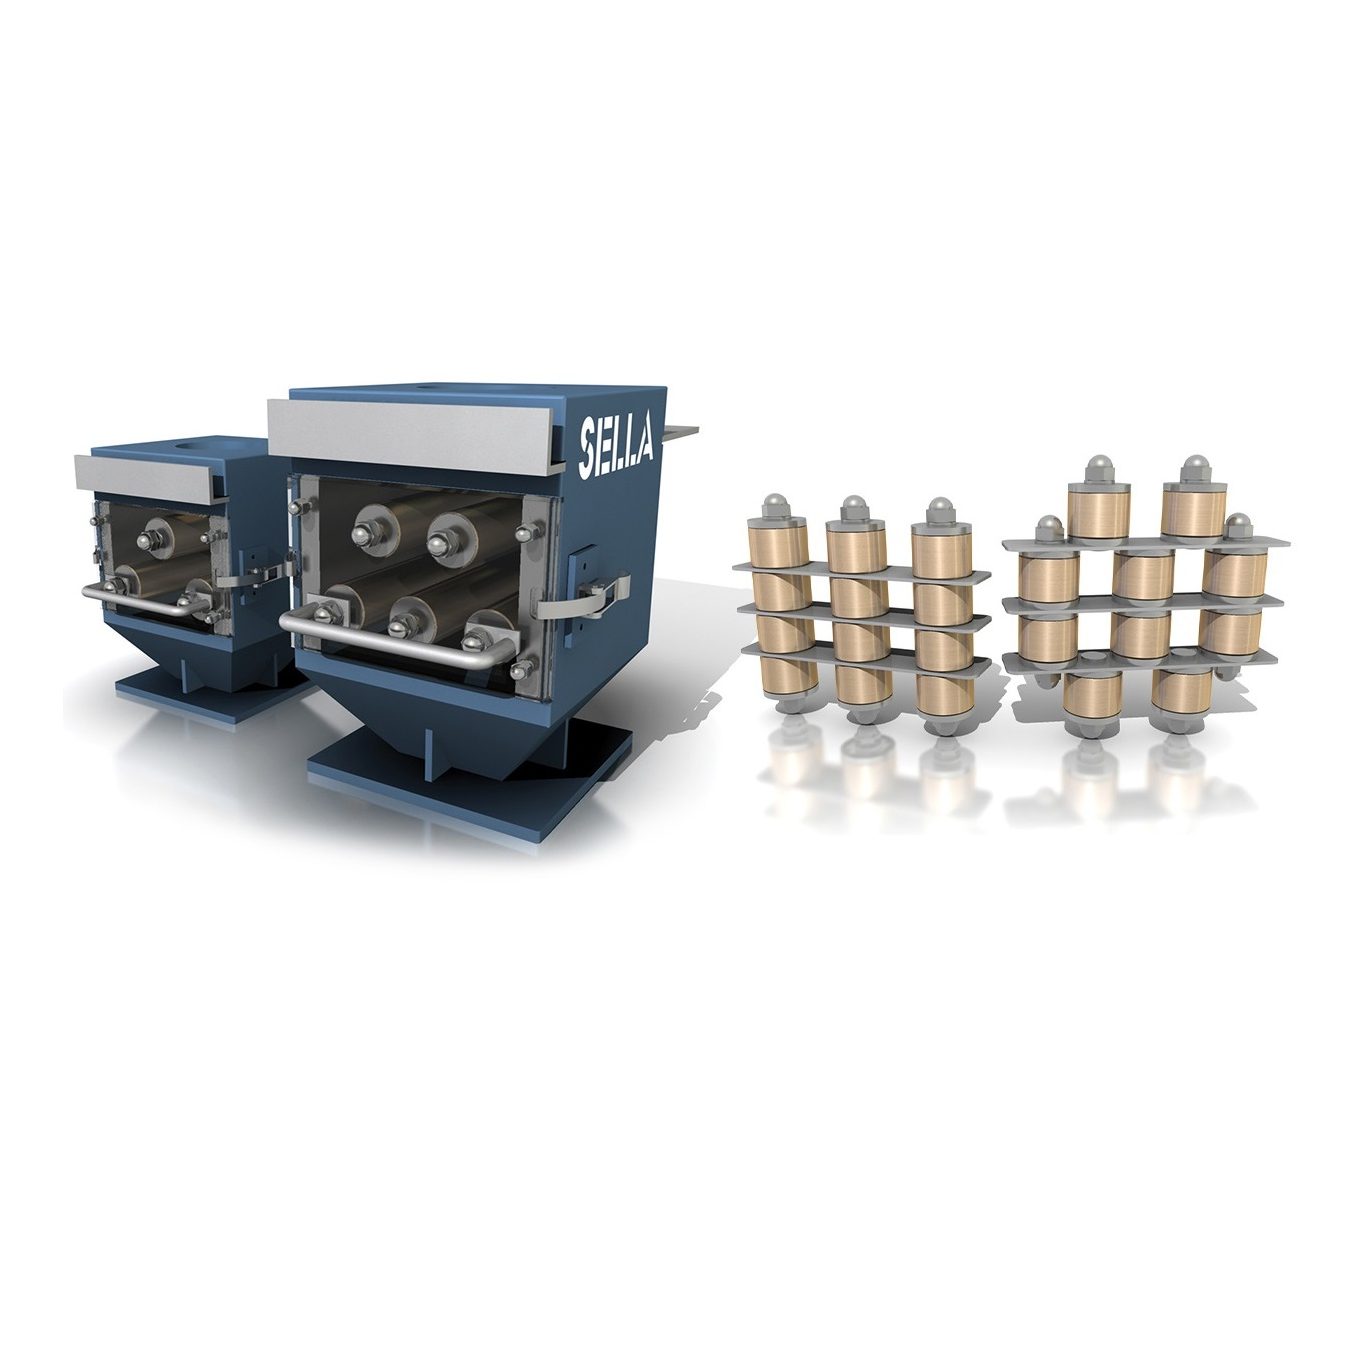 Grille et tiroir magnétique - Equip Industry - Machines